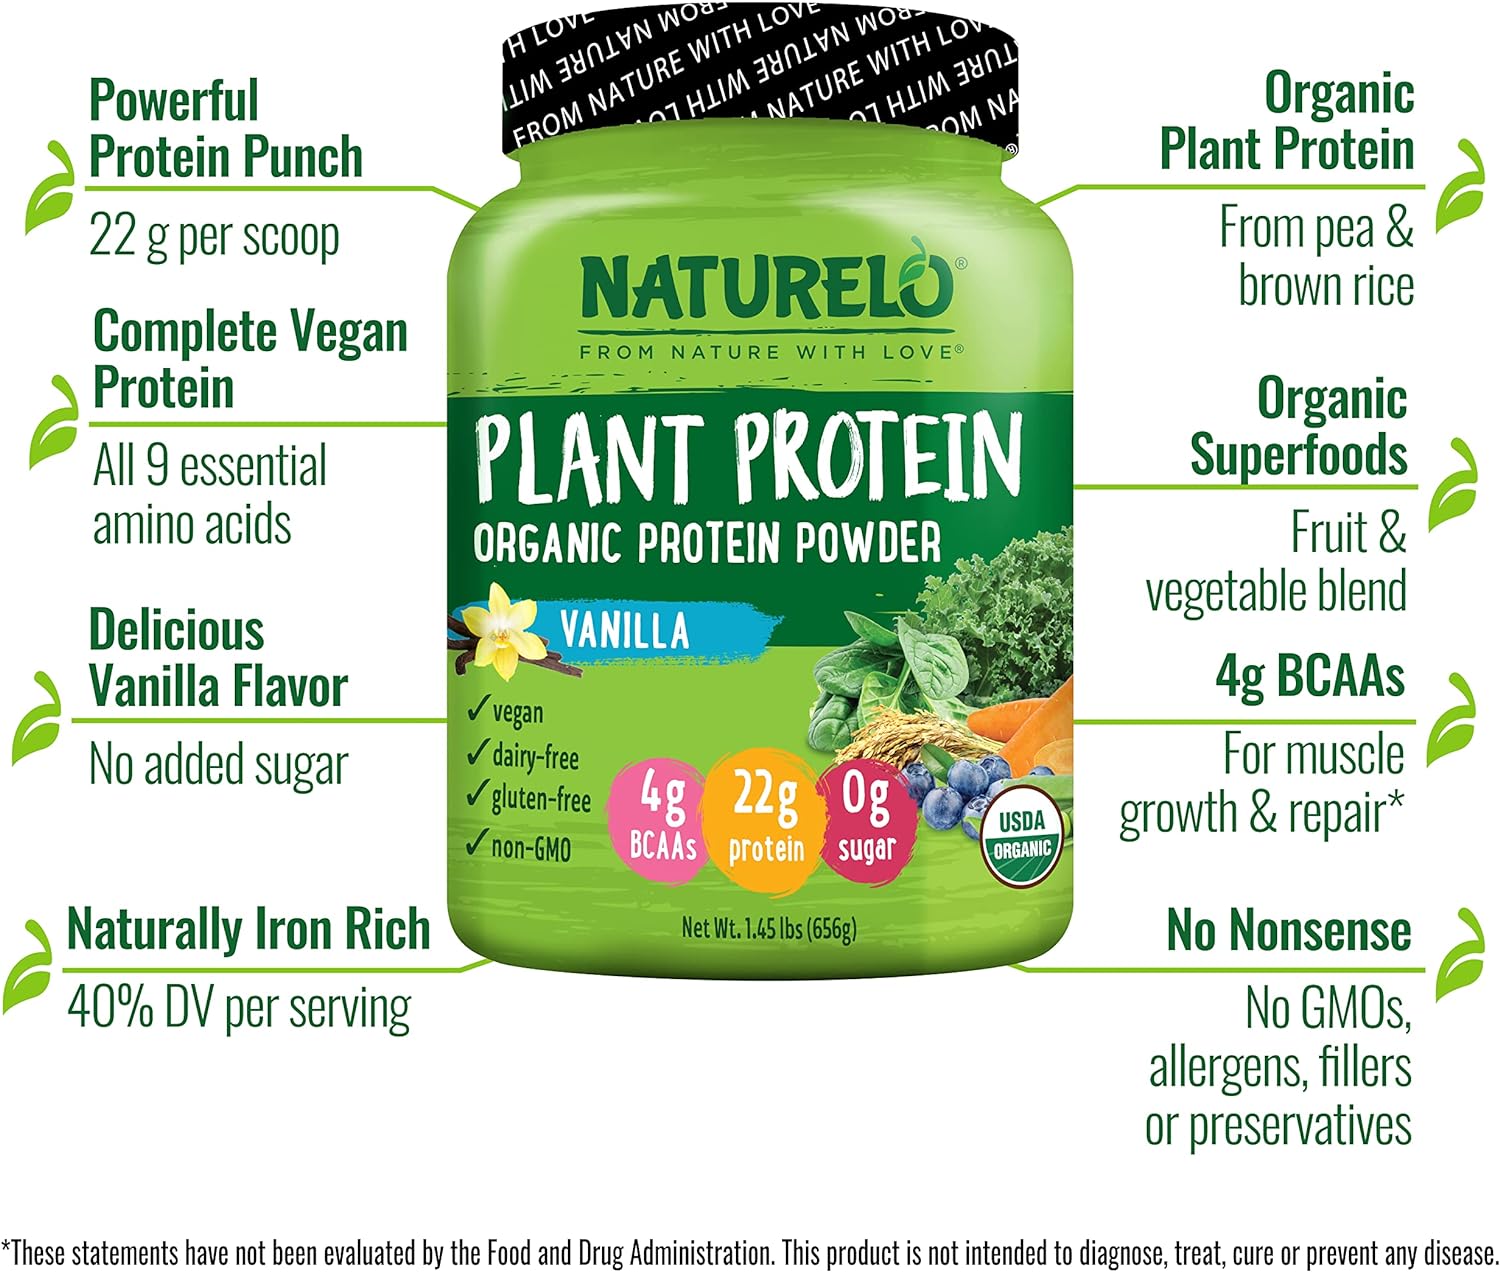 NATURELO Plant Protein Powder, Vanilla, 22g Protein - Non-GMO, Vegan, 